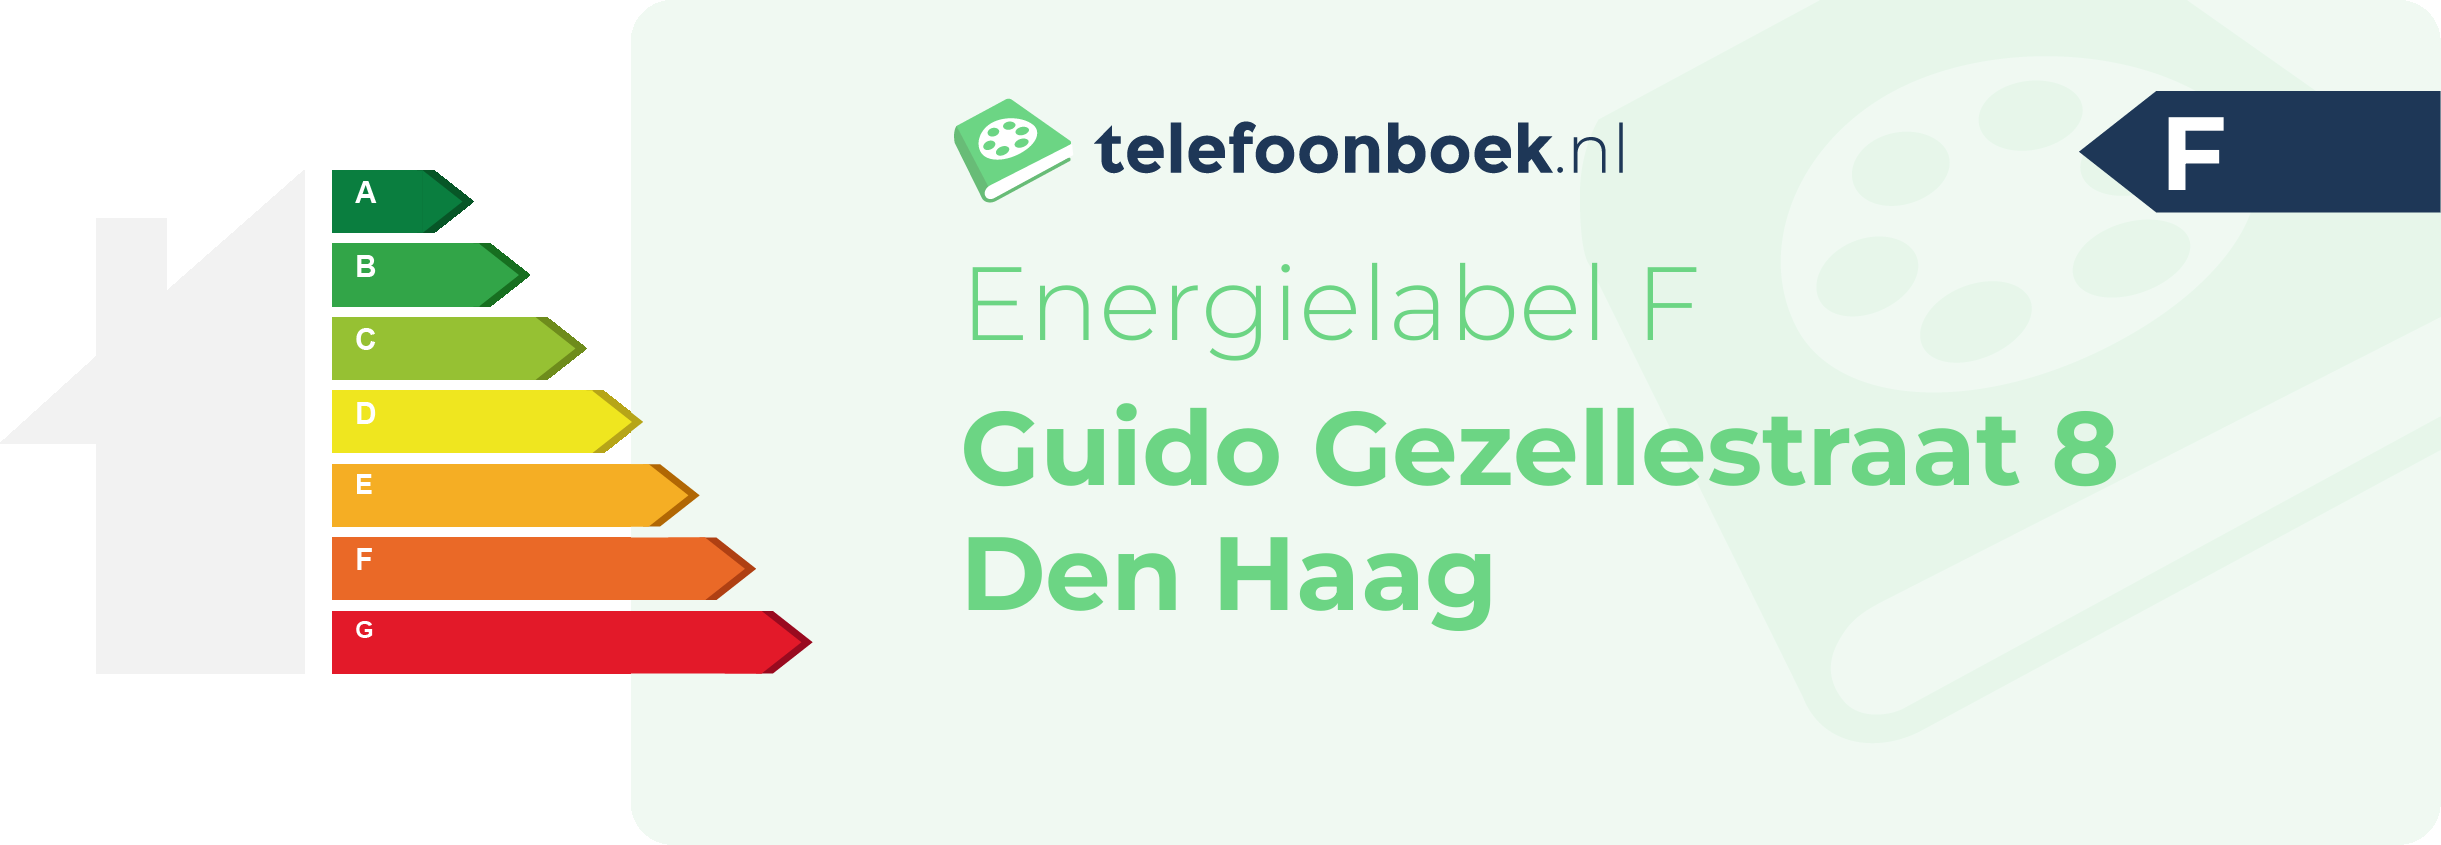 Energielabel Guido Gezellestraat 8 Den Haag